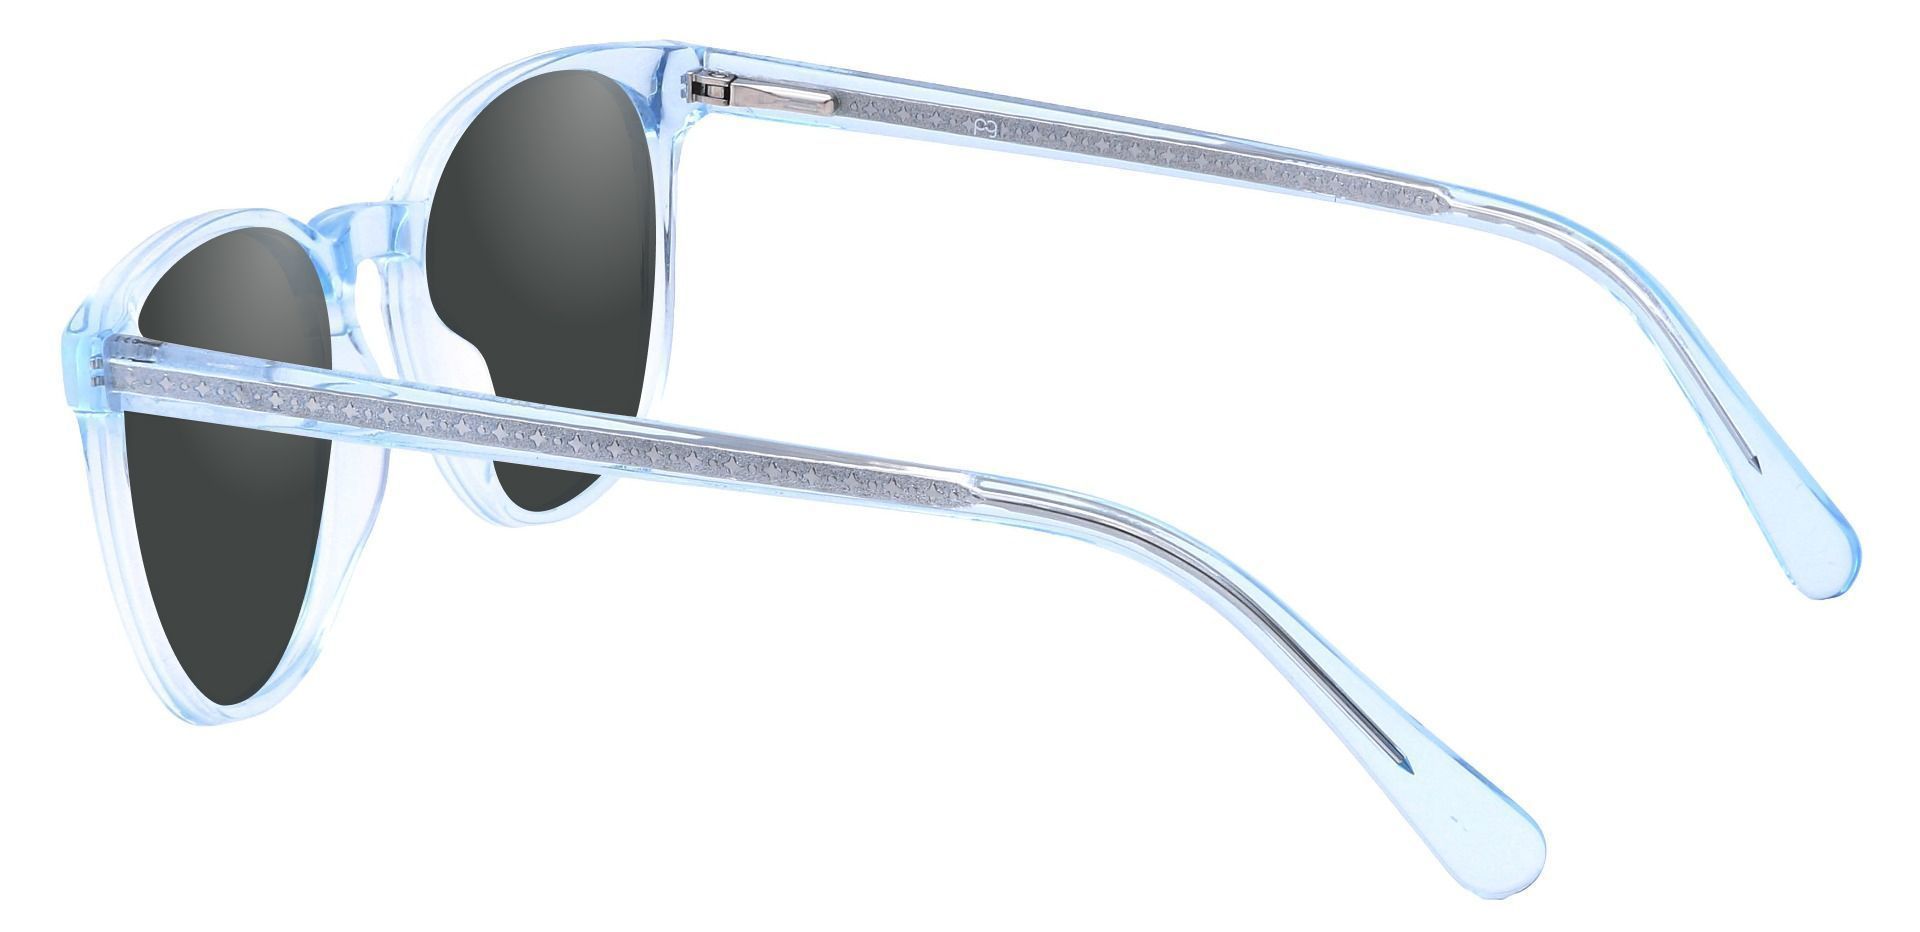 Nebula Round Prescription Sunglasses - Blue Frame With Gray Lenses